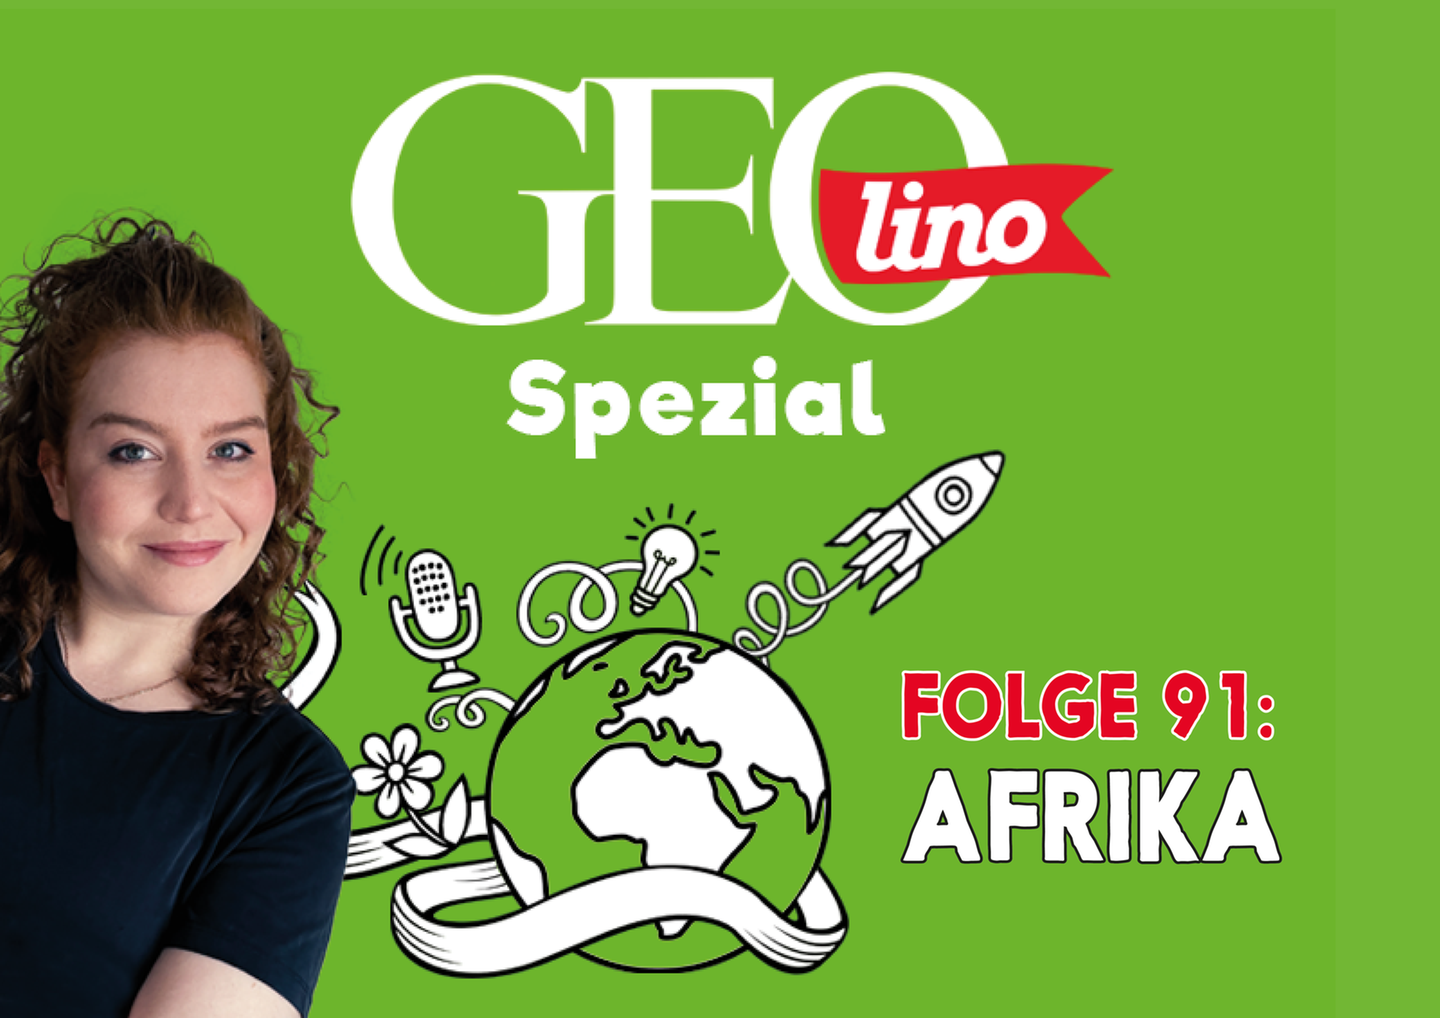 In Folge 91 unseres GEOlino-Podcasts reisen wir nach Afrika!